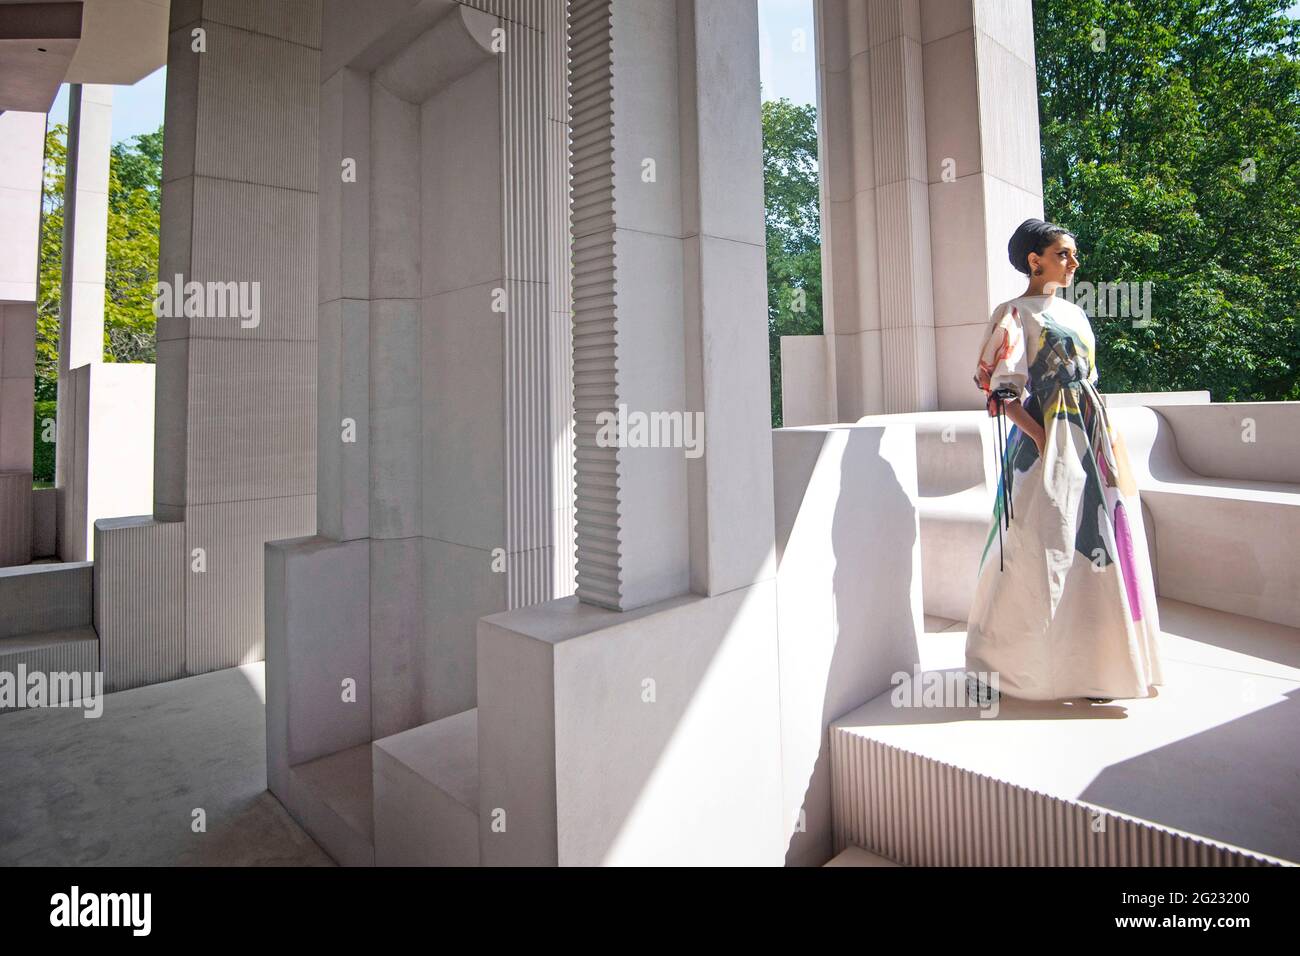 Architektin Sumayya Vally während einer Pressevorschau für den Serpentine Pavilion 2021, der von der in Johannesburg ansässigen Praxis Counterspace entworfen wurde, in der Serpentine Gallery, London. Bilddatum: Dienstag, 8. Juni 2021. Stockfoto